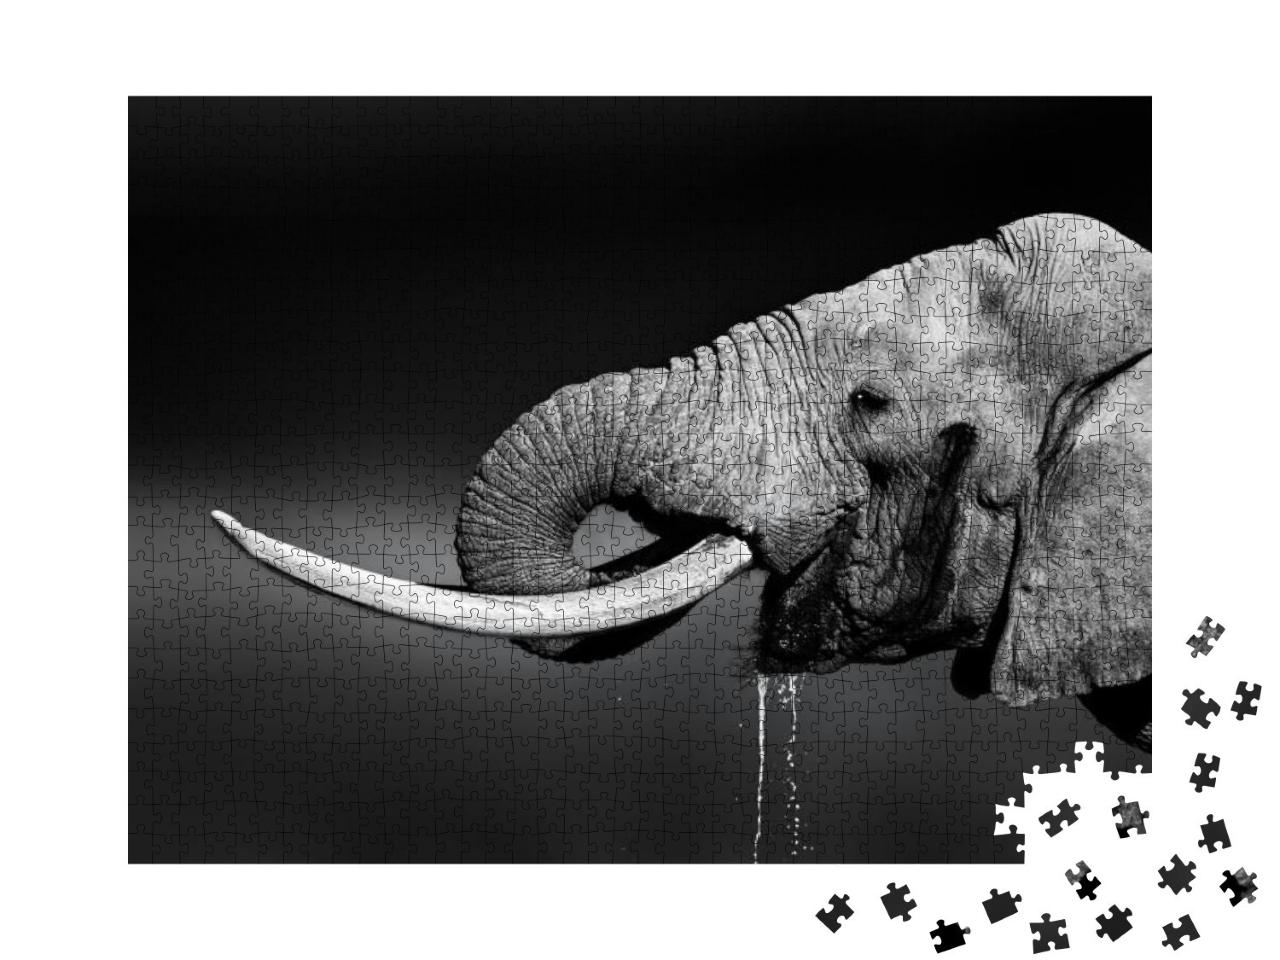 Puzzle 1000 Teile „Elefantenbulle beim Wassertrinken, schwarz-weiß“